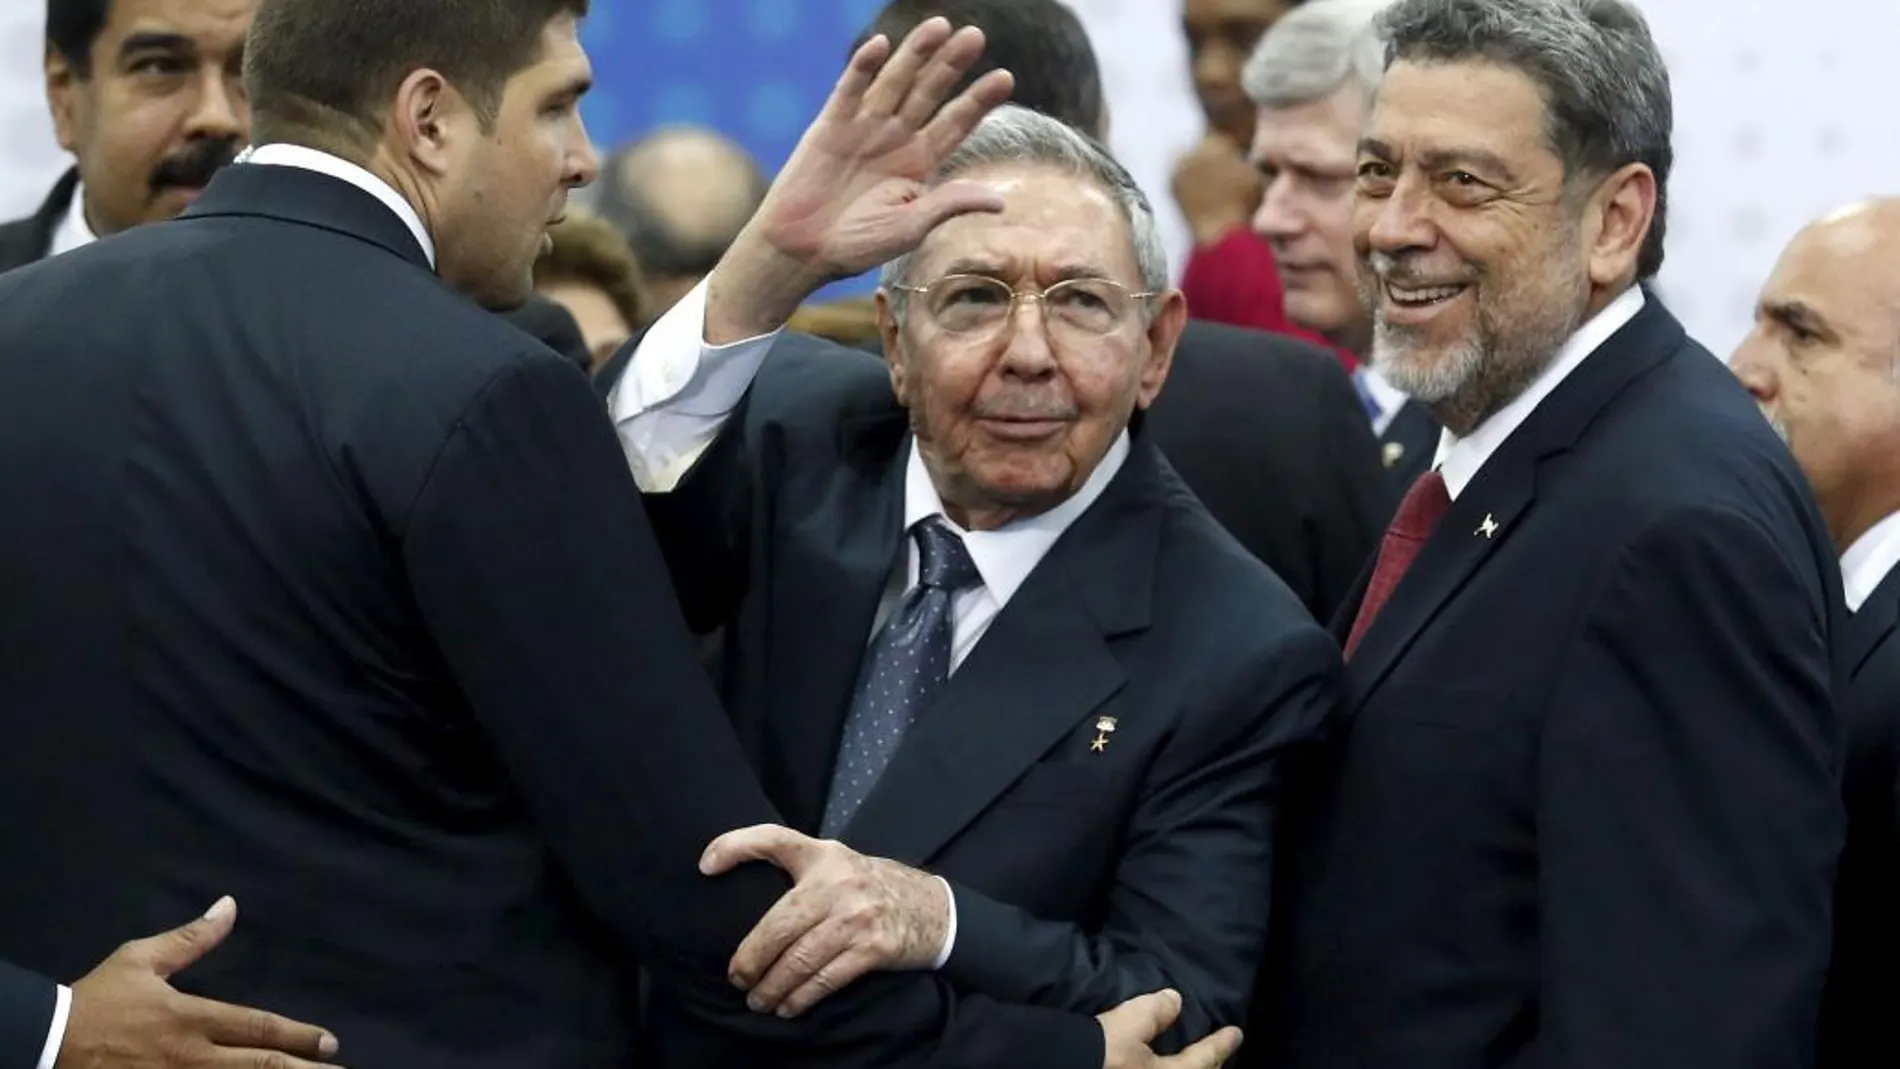 Raúl Castro saluda a los reporteros durante la Cumbre, junto al presidente de San Vicente y Granada, Ralph Everard Gonsalves